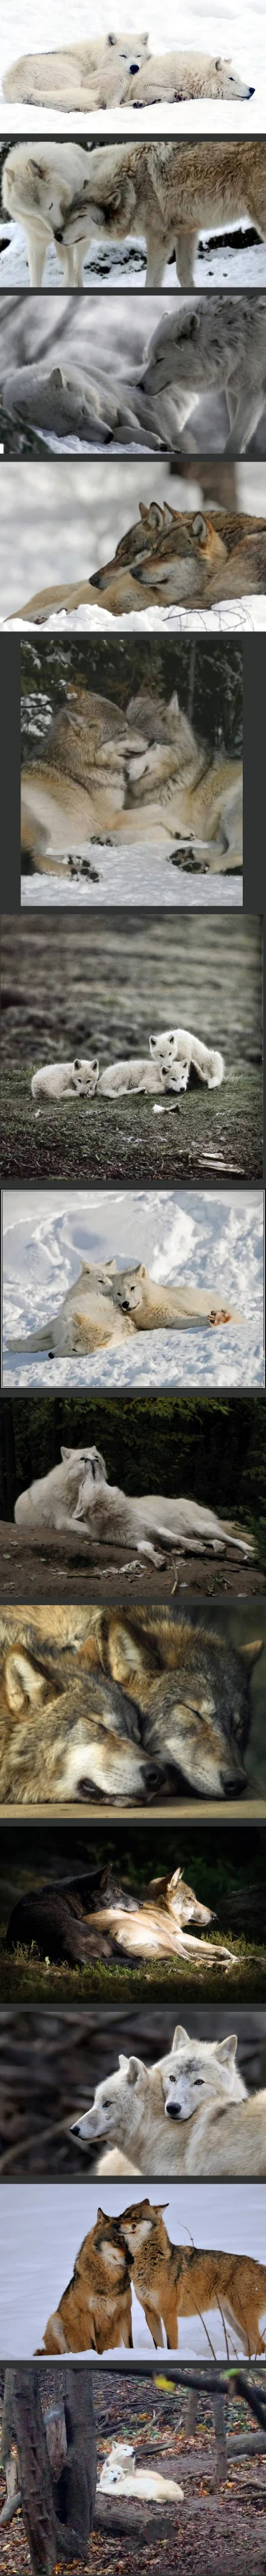 Wulfi - Wilki też okazują uczucia

#wilk #wilki #zwierzeta #zwierzaczki #smiesznypi...